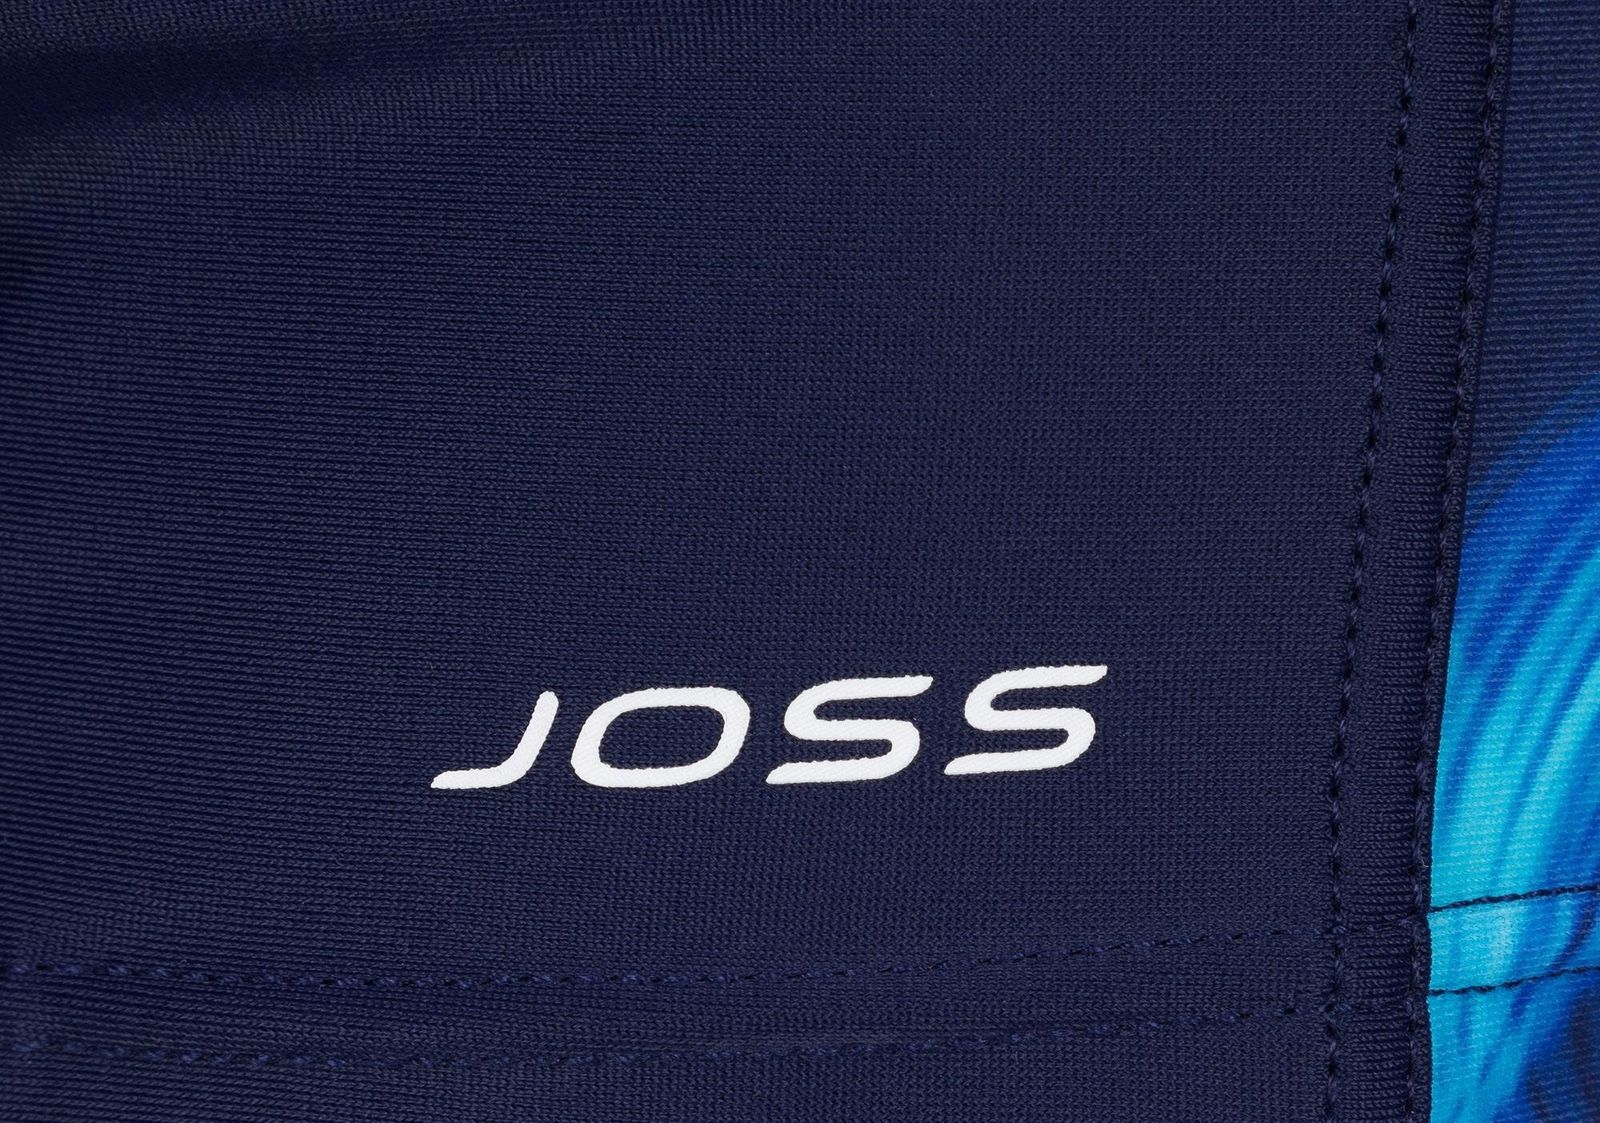    Joss Boys' Swim Trunks, : , . BSX04S6-MQ.  164